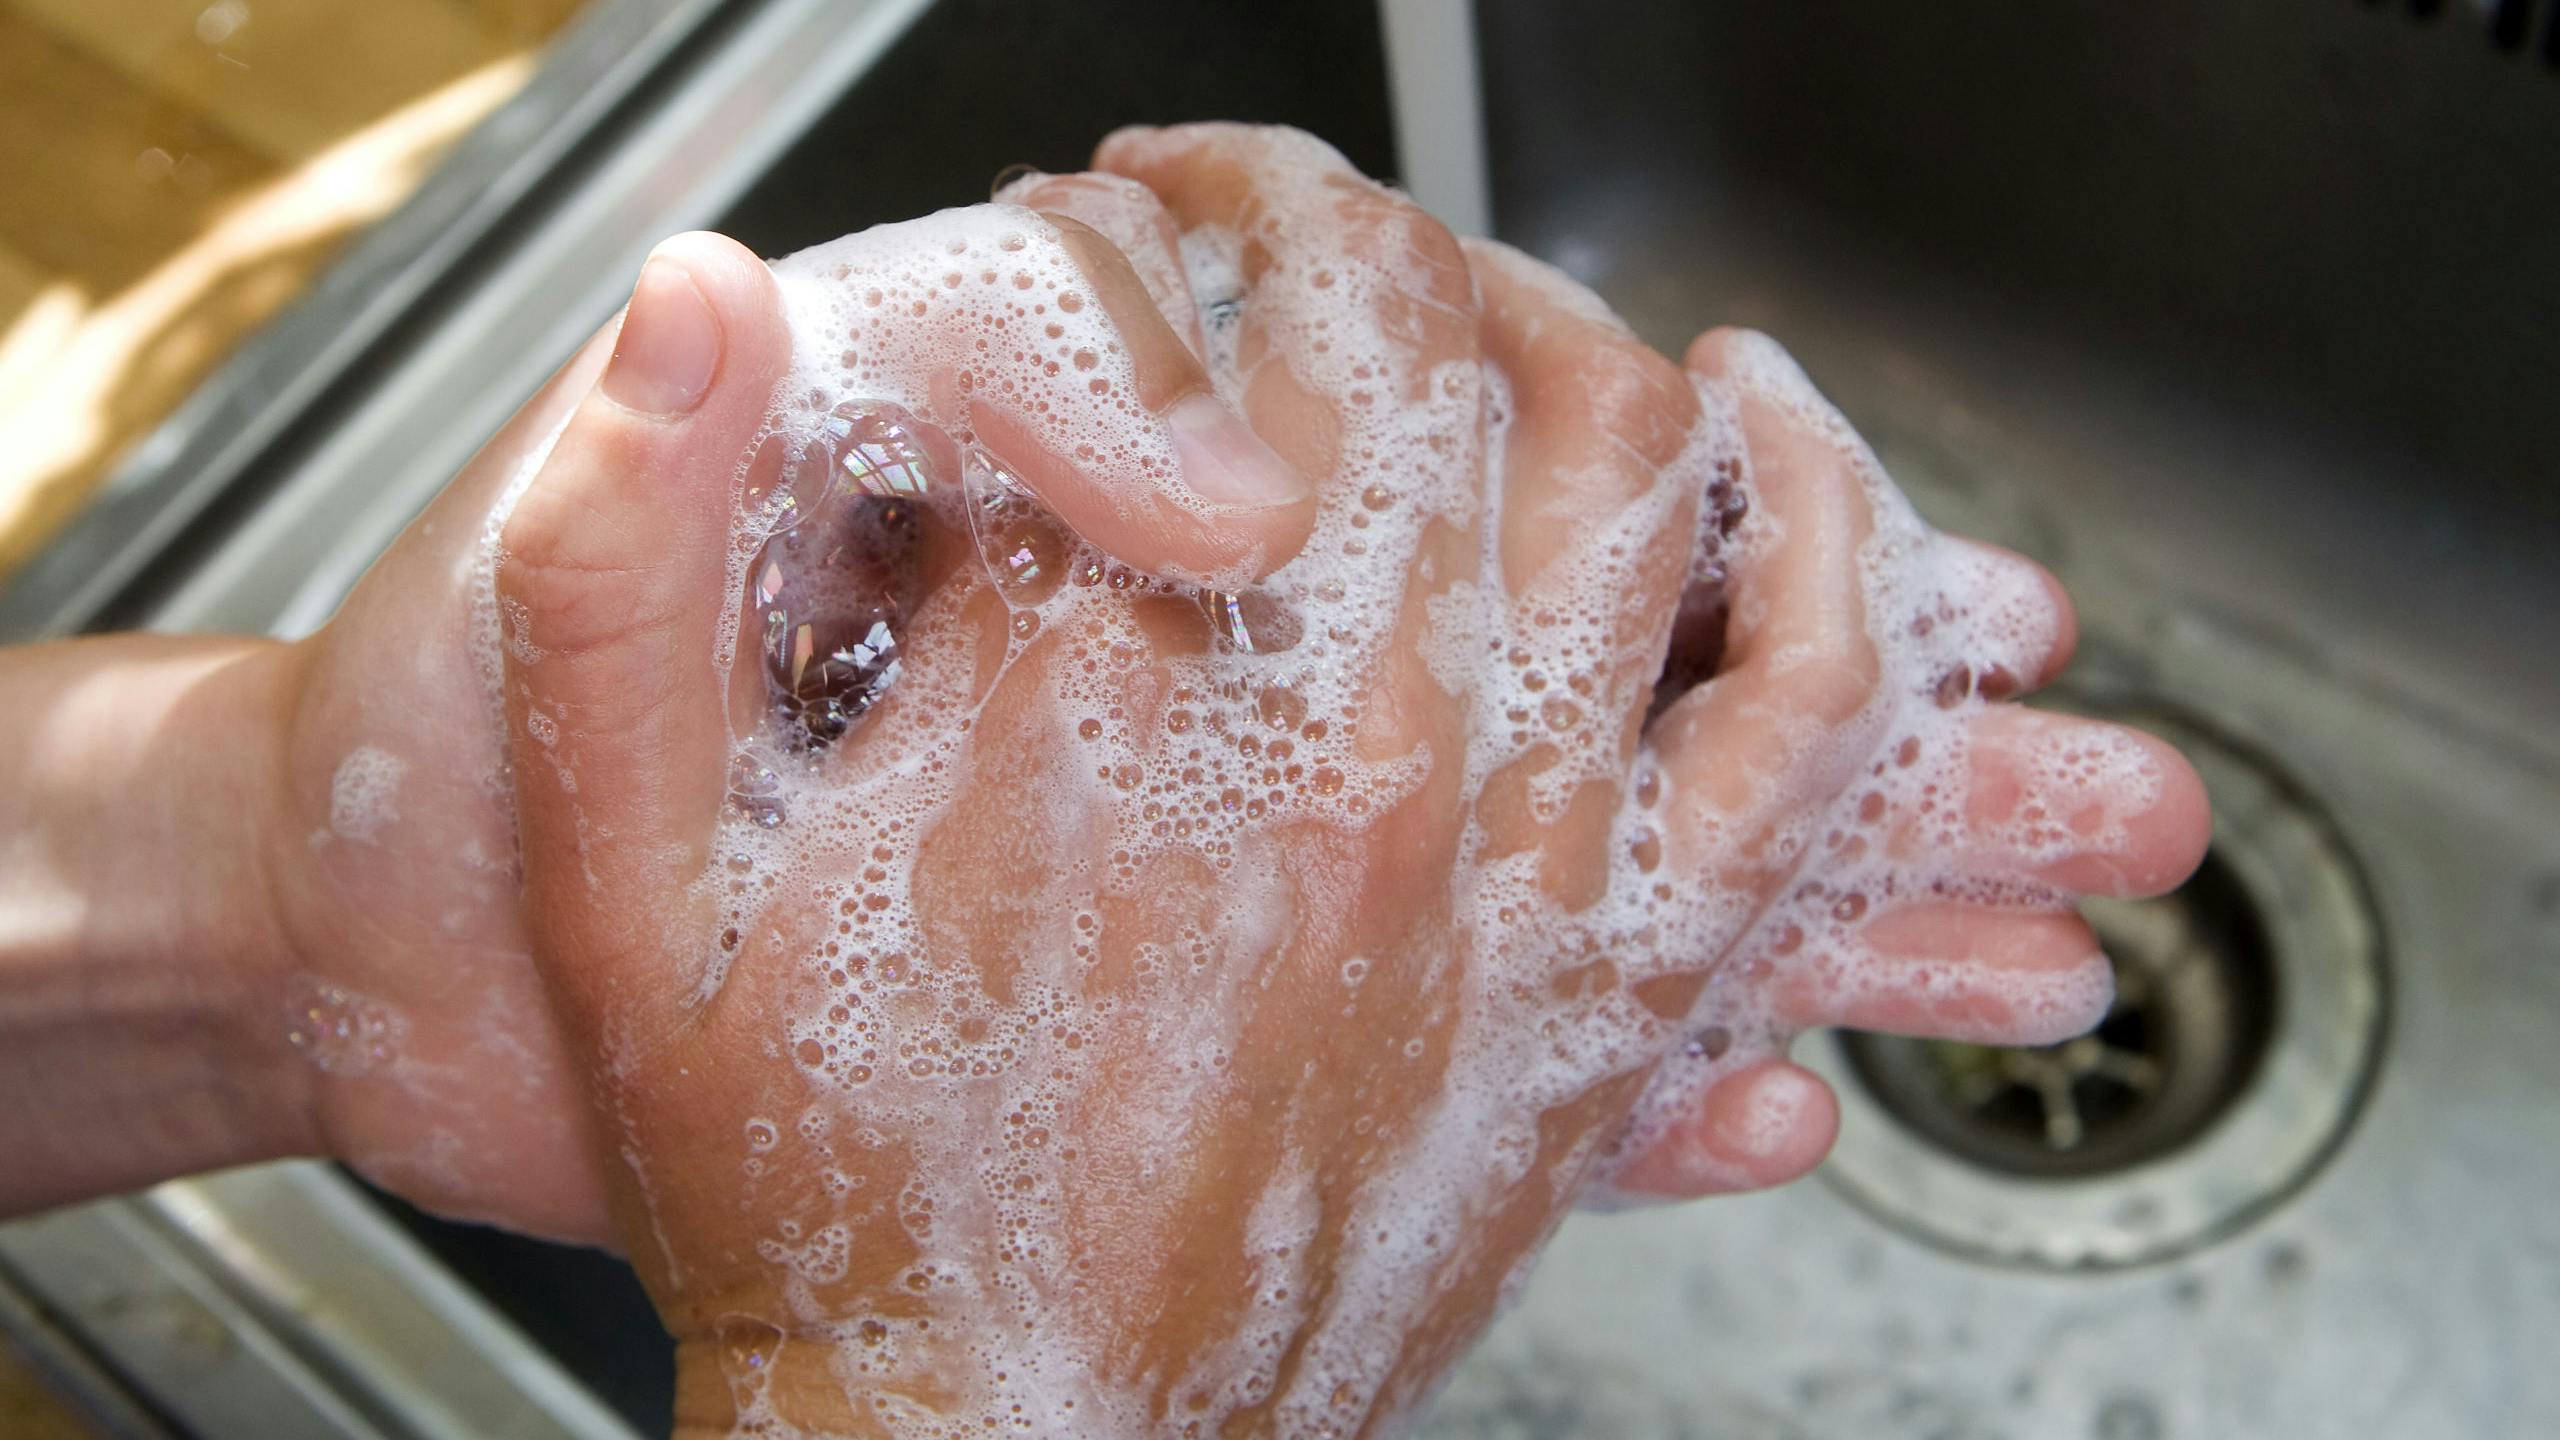 2009-07-30 00:00:00 HAARLEM - ILLUSTRATIE Mexicaanse griep. Handen wassen. ANP XTRA KOEN SUYK